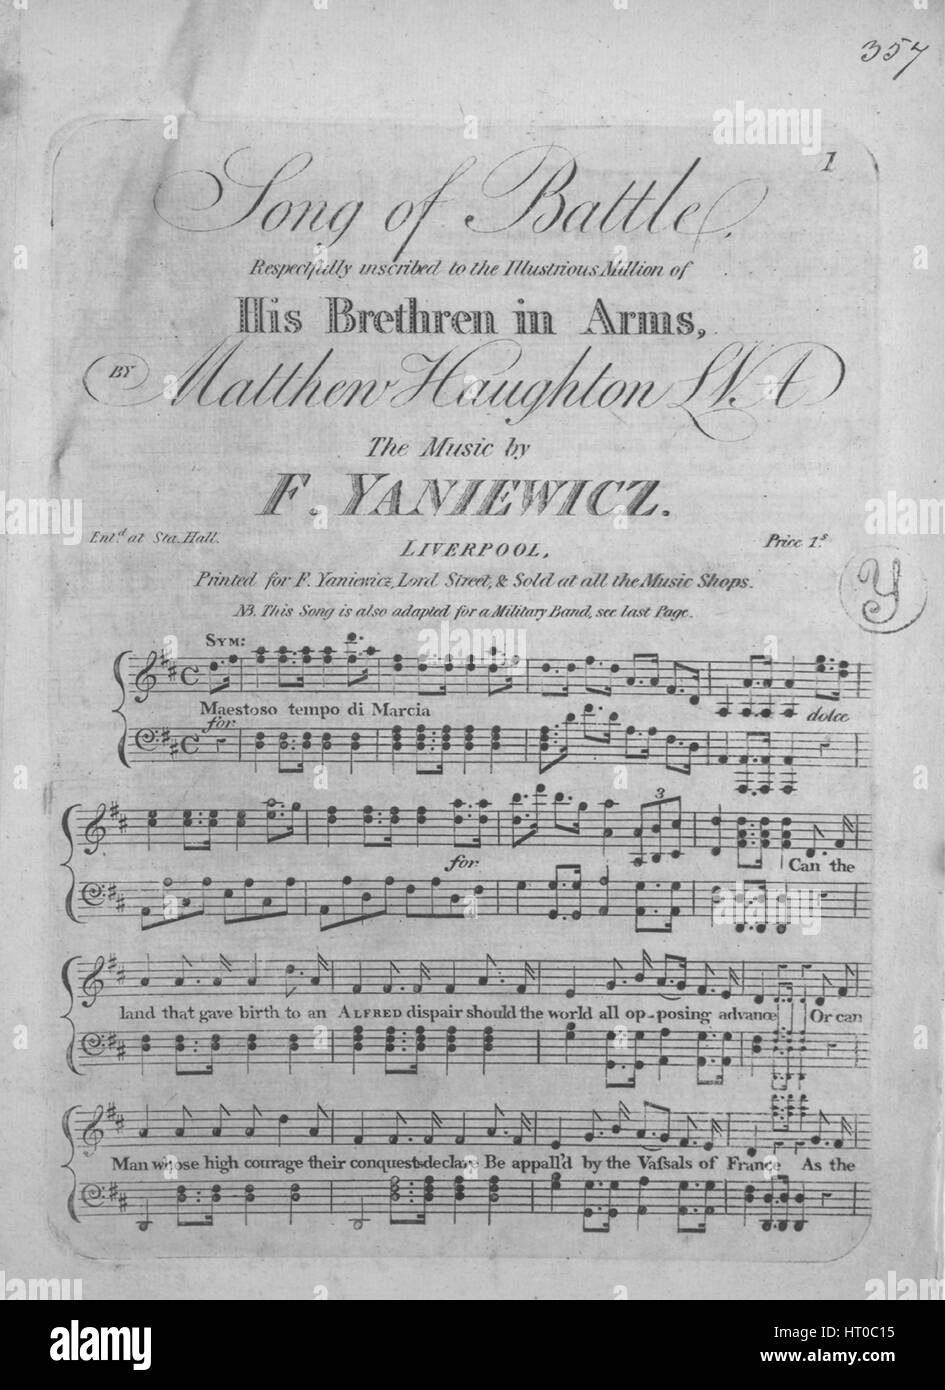 Noten-Cover-Bild des Liedes "Song of Battle" mit ursprünglichen Autorschaft Noten lesen "The Music von F Yaniewicz [Text Matthew Haughton, LNA]", 1900. Der Verlag als "F. Yaniewicz, Lord Street und verkauft in den Musik-Shops" aufgeführt ist, die Form der Komposition ist "strophischen", die Instrumentierung ist "Klavier/Cembalo und Stimme; März Anordnung für Militärkapelle enthalten (Klarinetten in C, Trompeten in C, Hörner in C, Fagotte, Schlange) ", die erste Linie liest"Können Sie das Land, das Geburt t ein Alfred Verzweiflung gab sollte die Welt alle gegnerischen voranbringen", und der Abbildung Künstler als aufgeführt ist Stockfoto